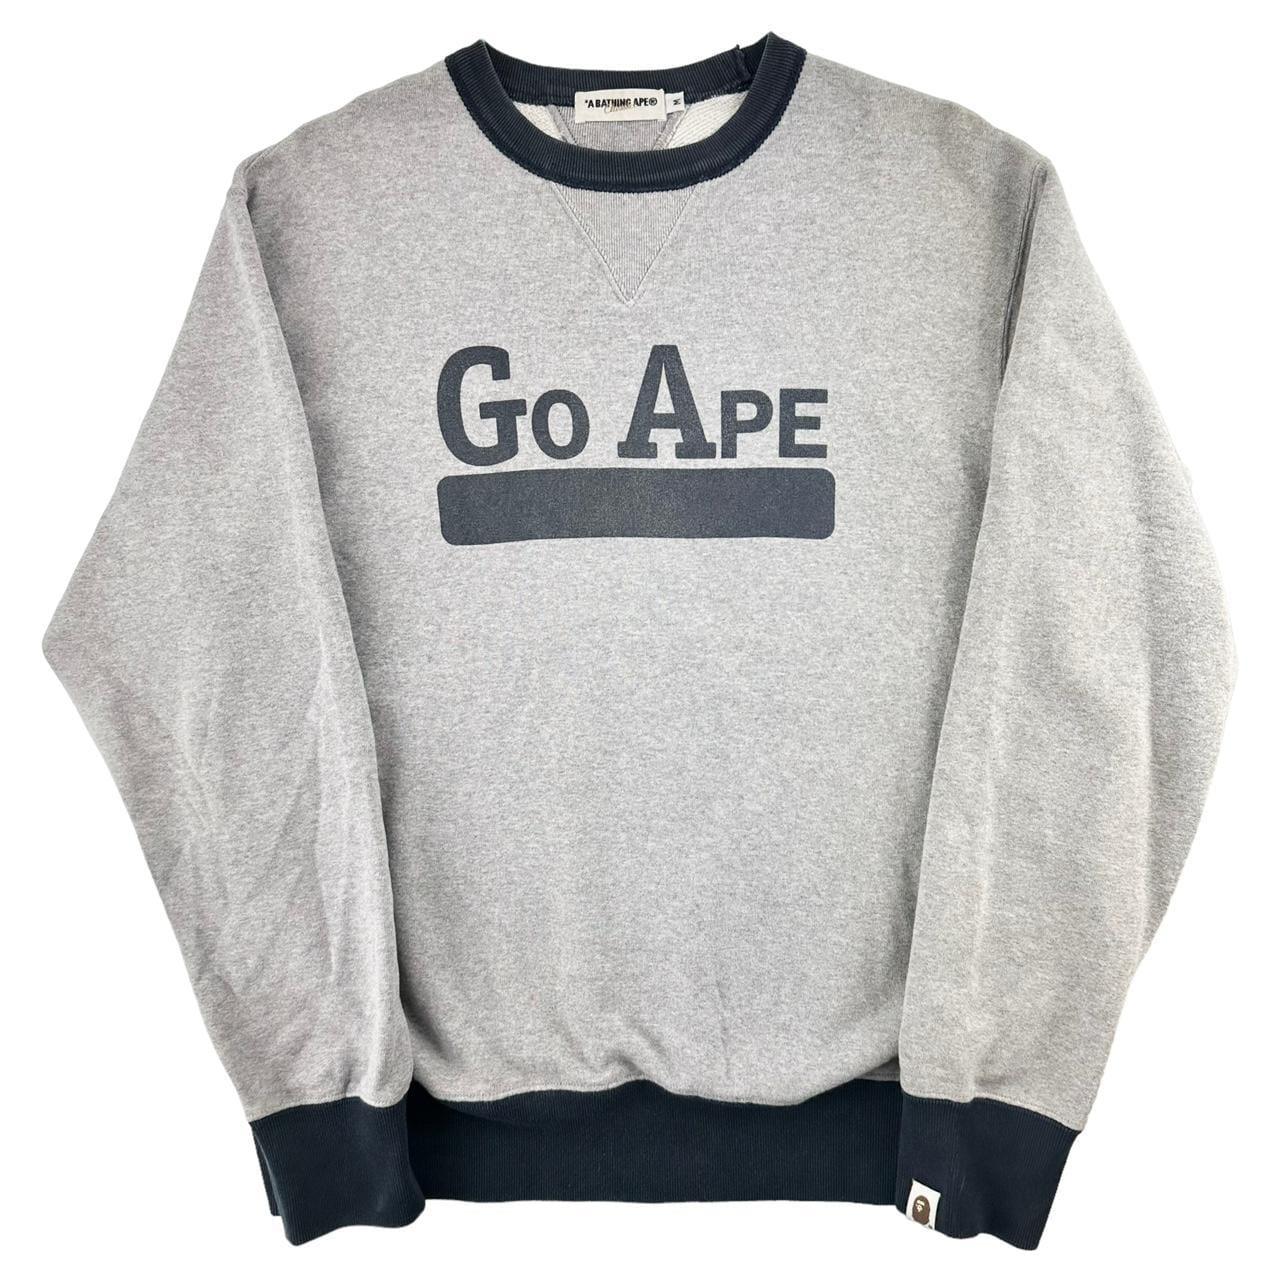 Vintage Bape go ape jumper sweatshirt size M - Known Source